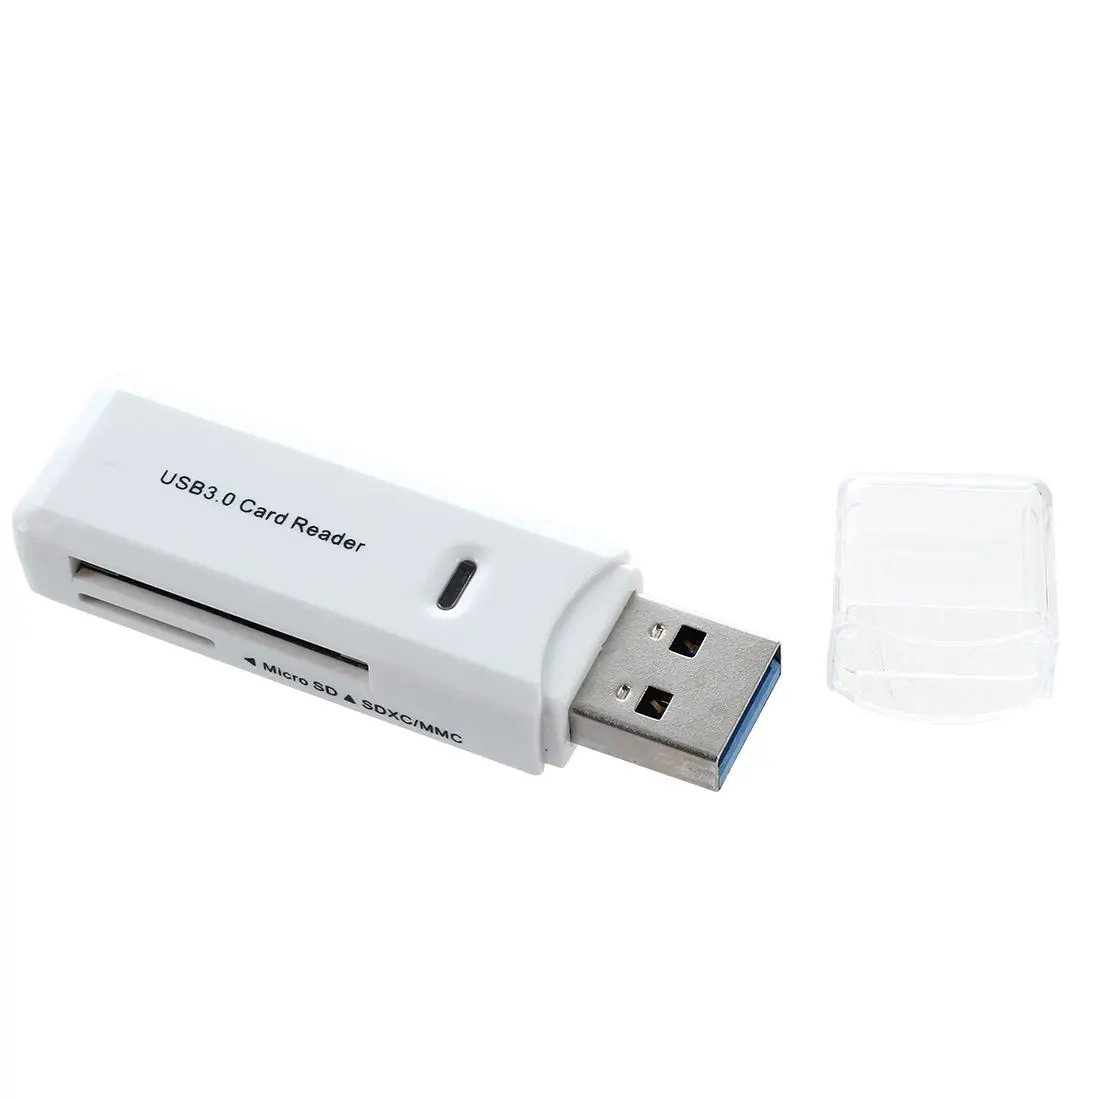 Горячая Распродажа Sd Card Reader Новый USB 3,0 5 Гбит Super Скорость SDXC TF адаптер флэш-памяти